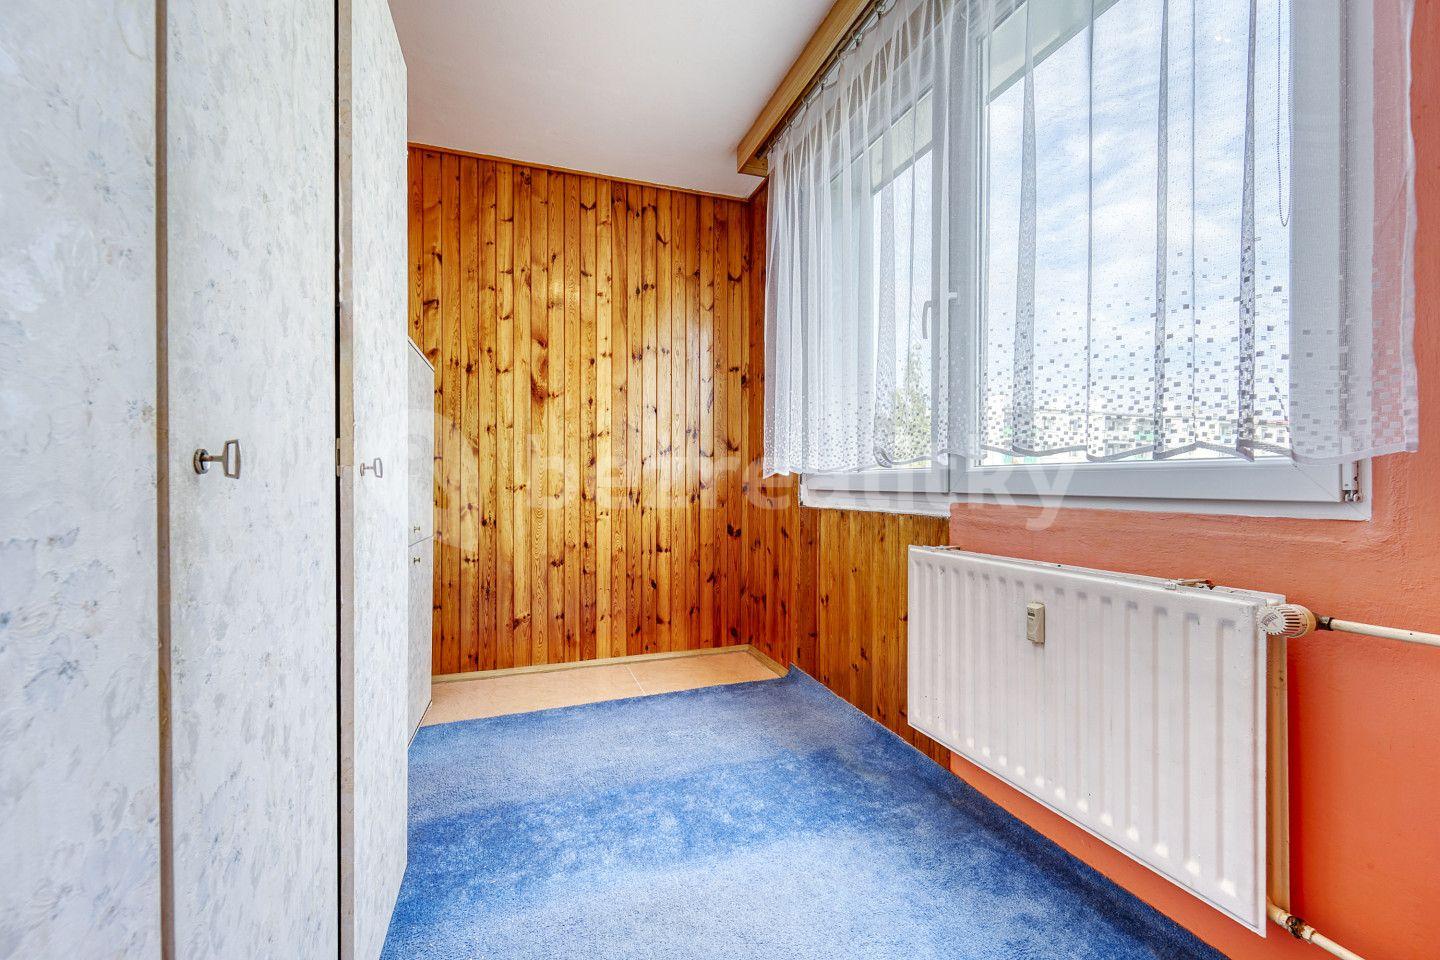 3 bedroom flat for sale, 60 m², Michlova, Domažlice, Plzeňský Region